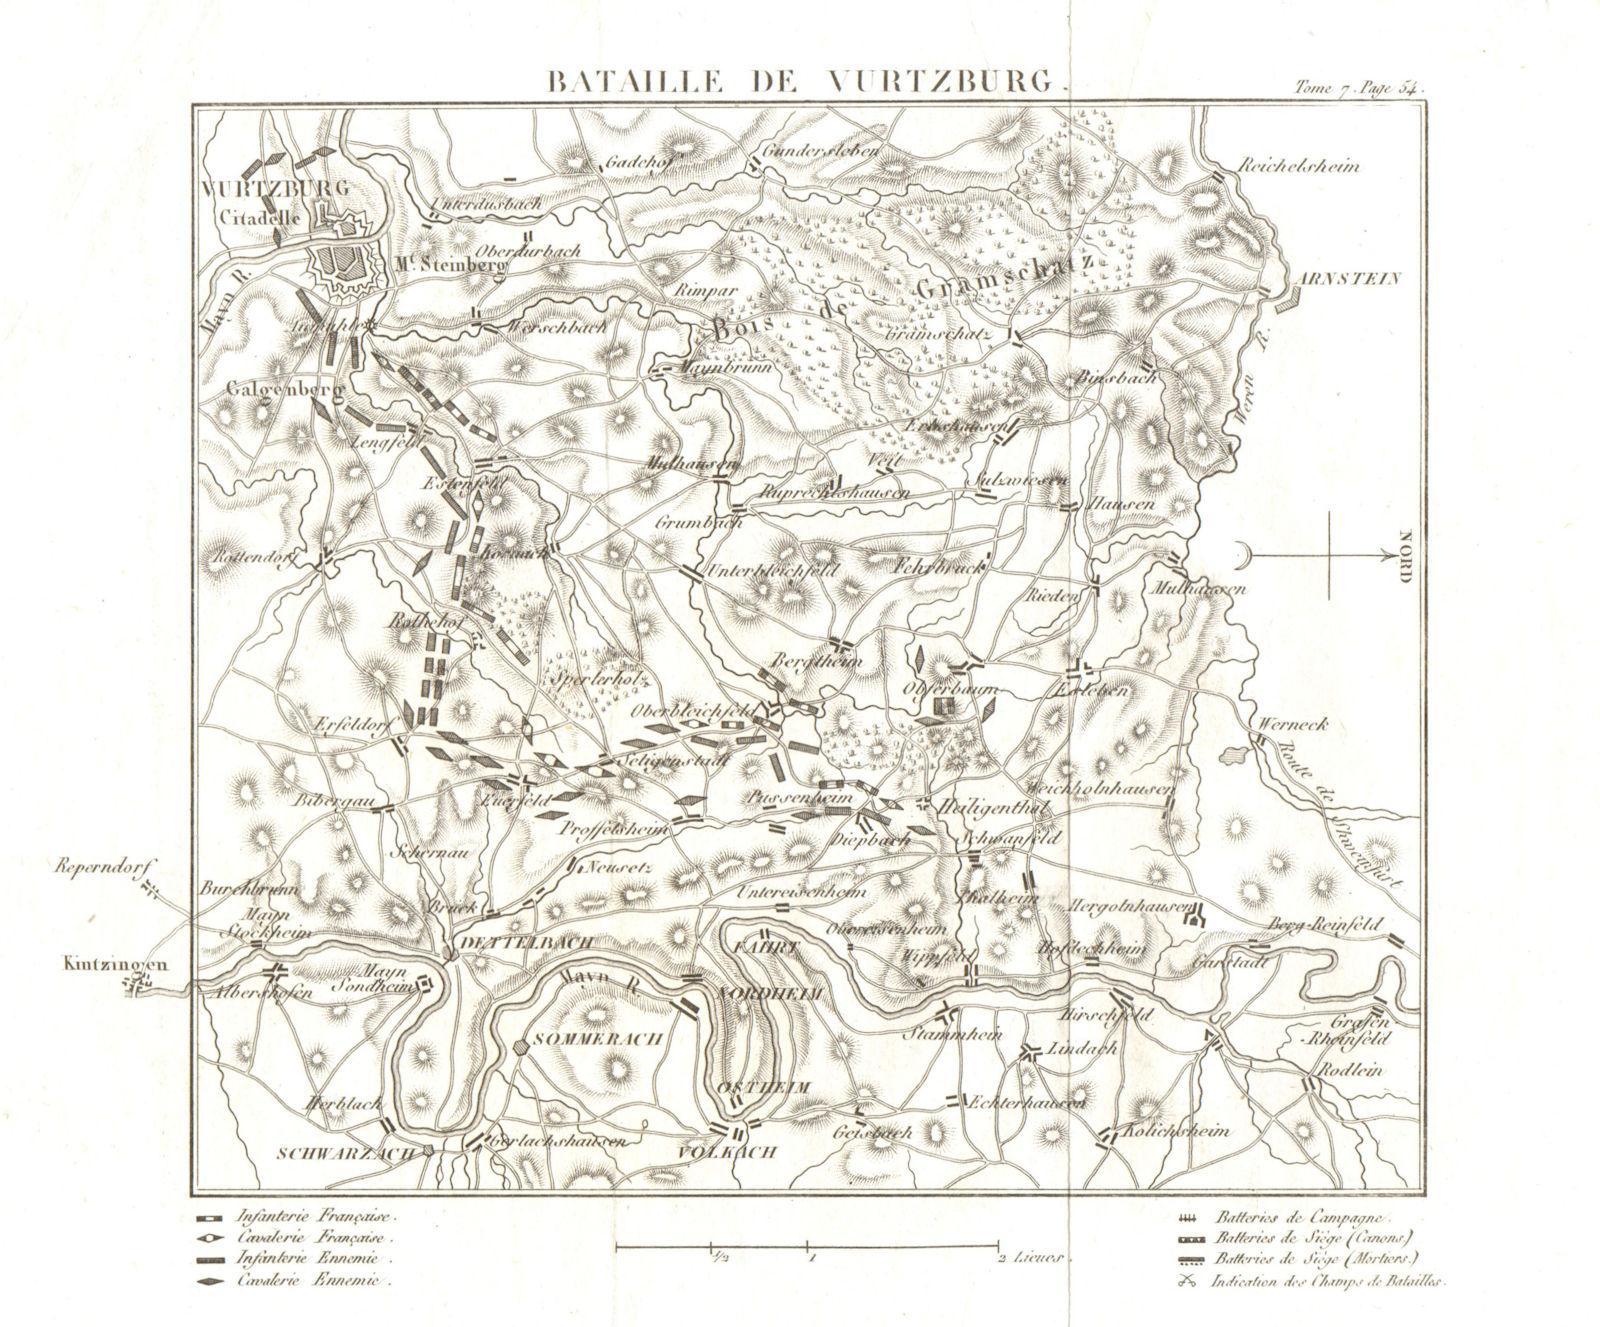 Associate Product Battle of Vurtzburg/Würzburg 1796. War of the First Coalition. Bavaria 1818 map